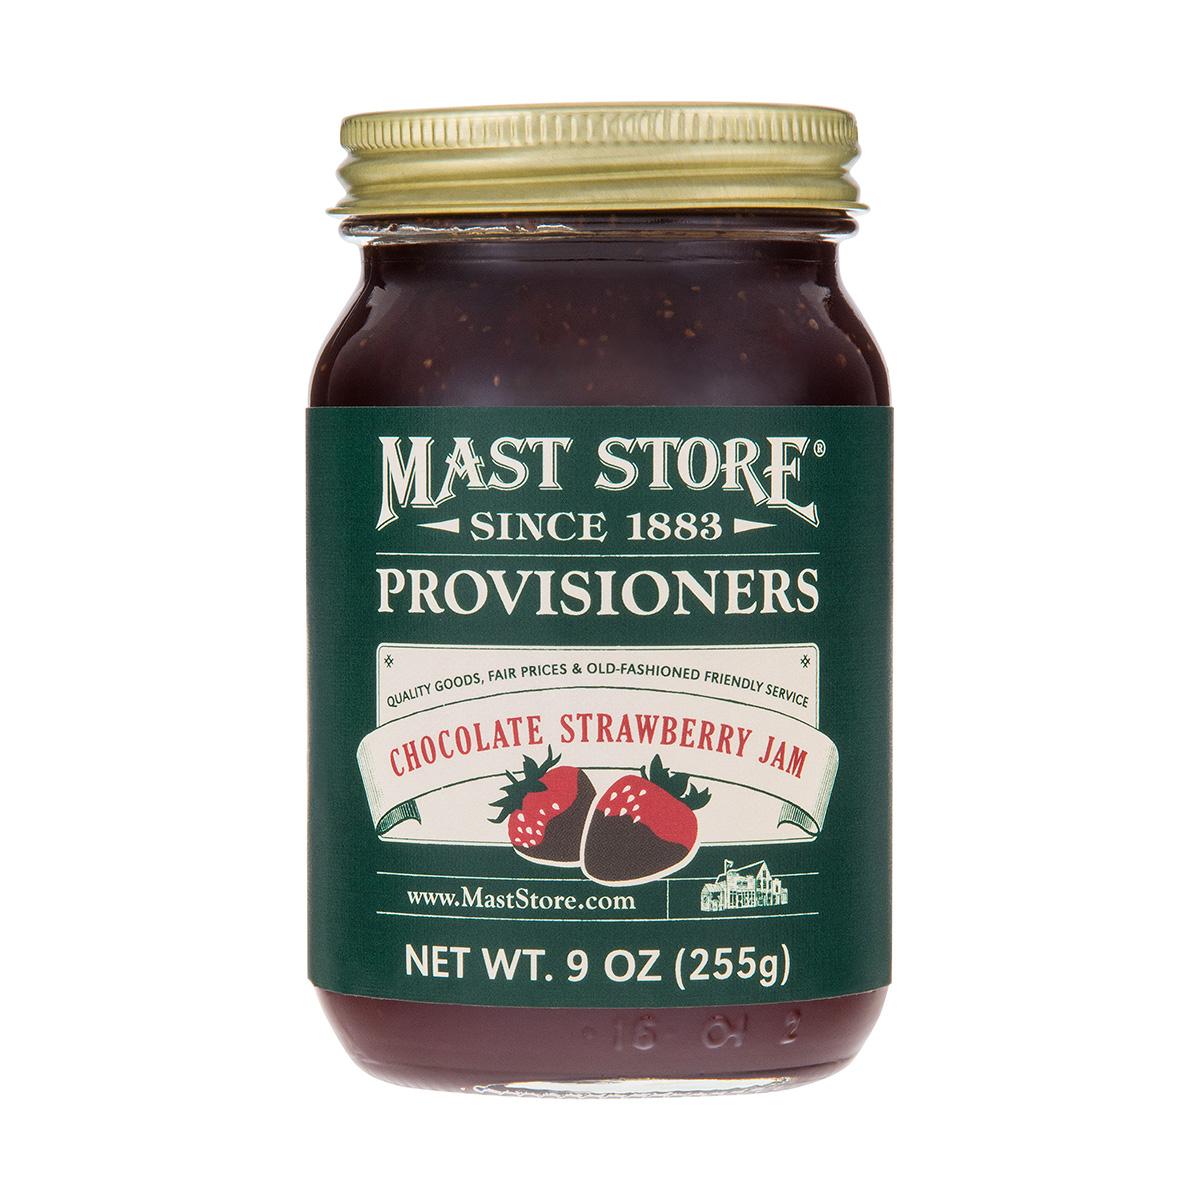  Mast Store Provisioners Chocolate Strawberry Jam